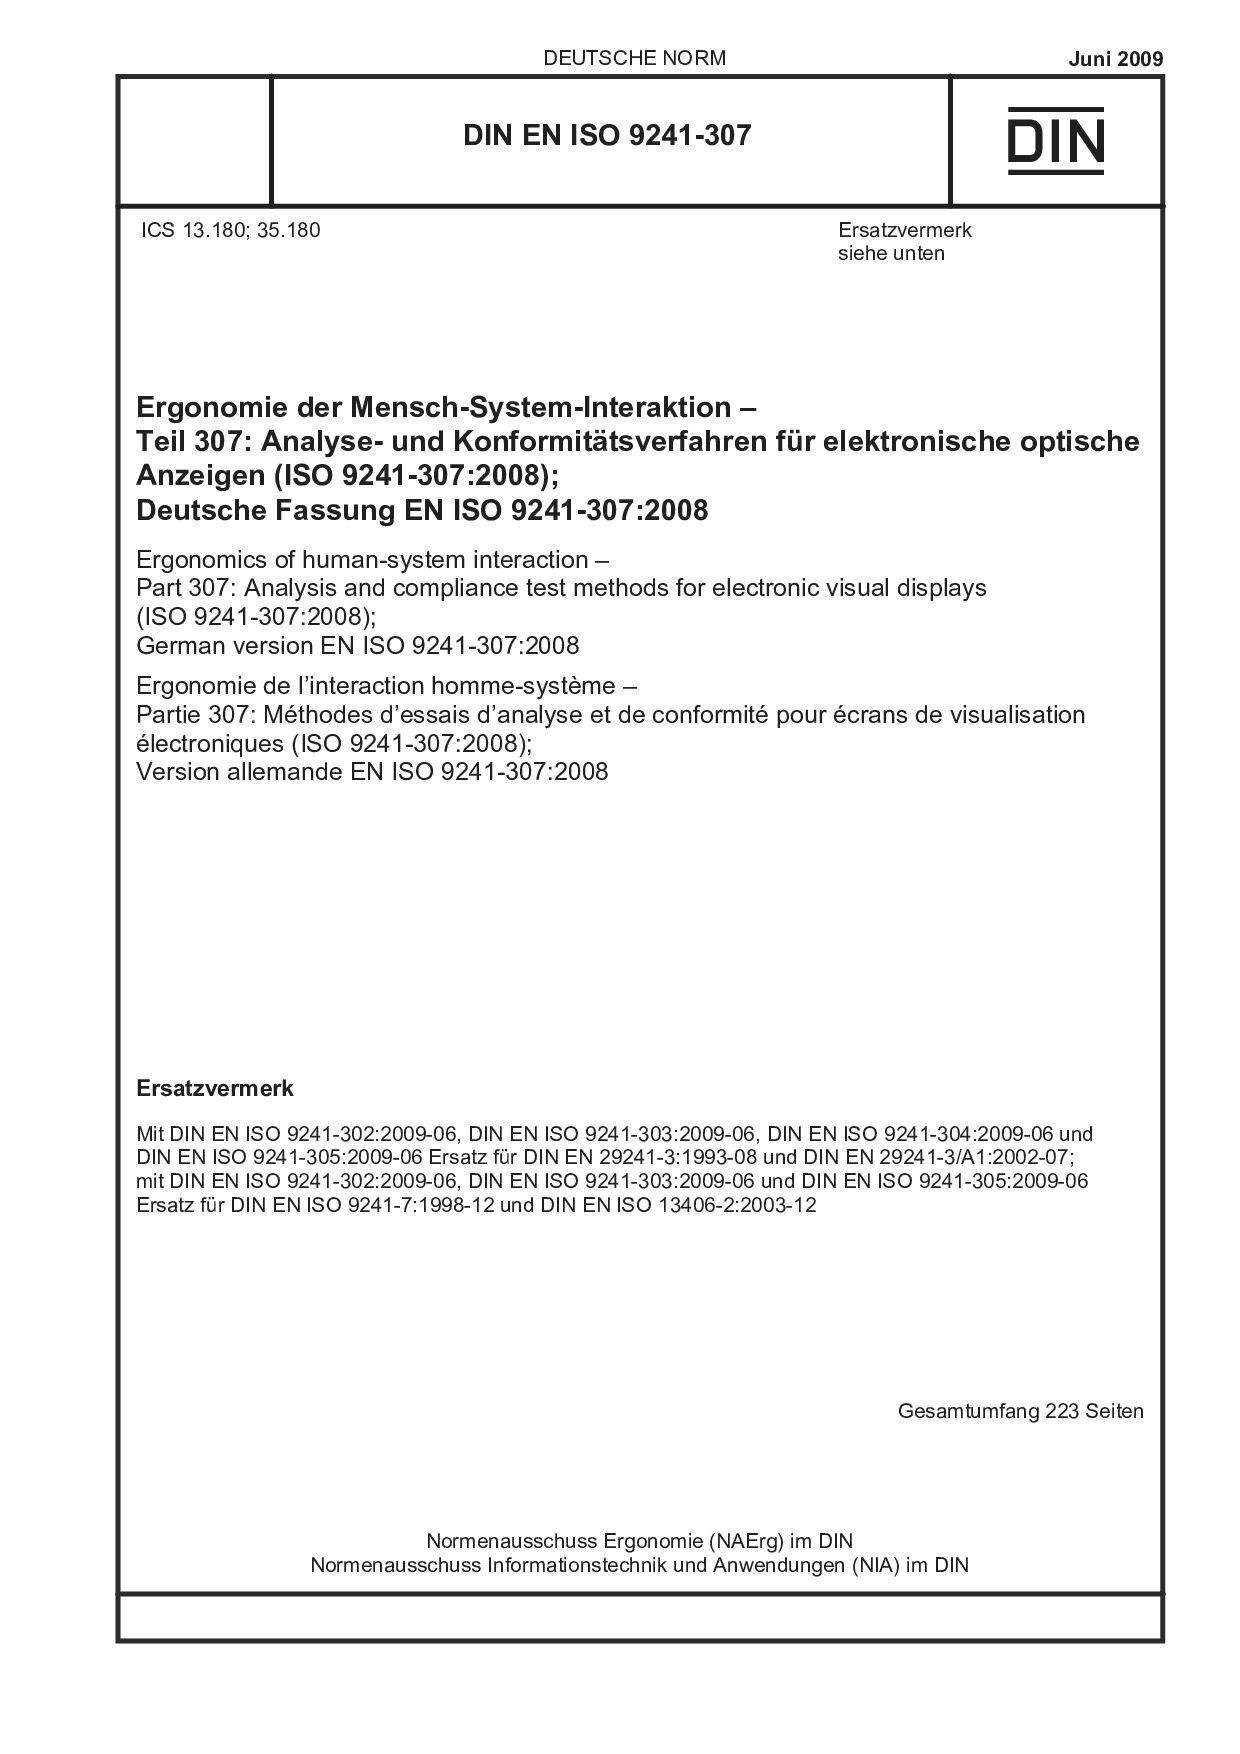 DIN EN ISO 9241-307:2009